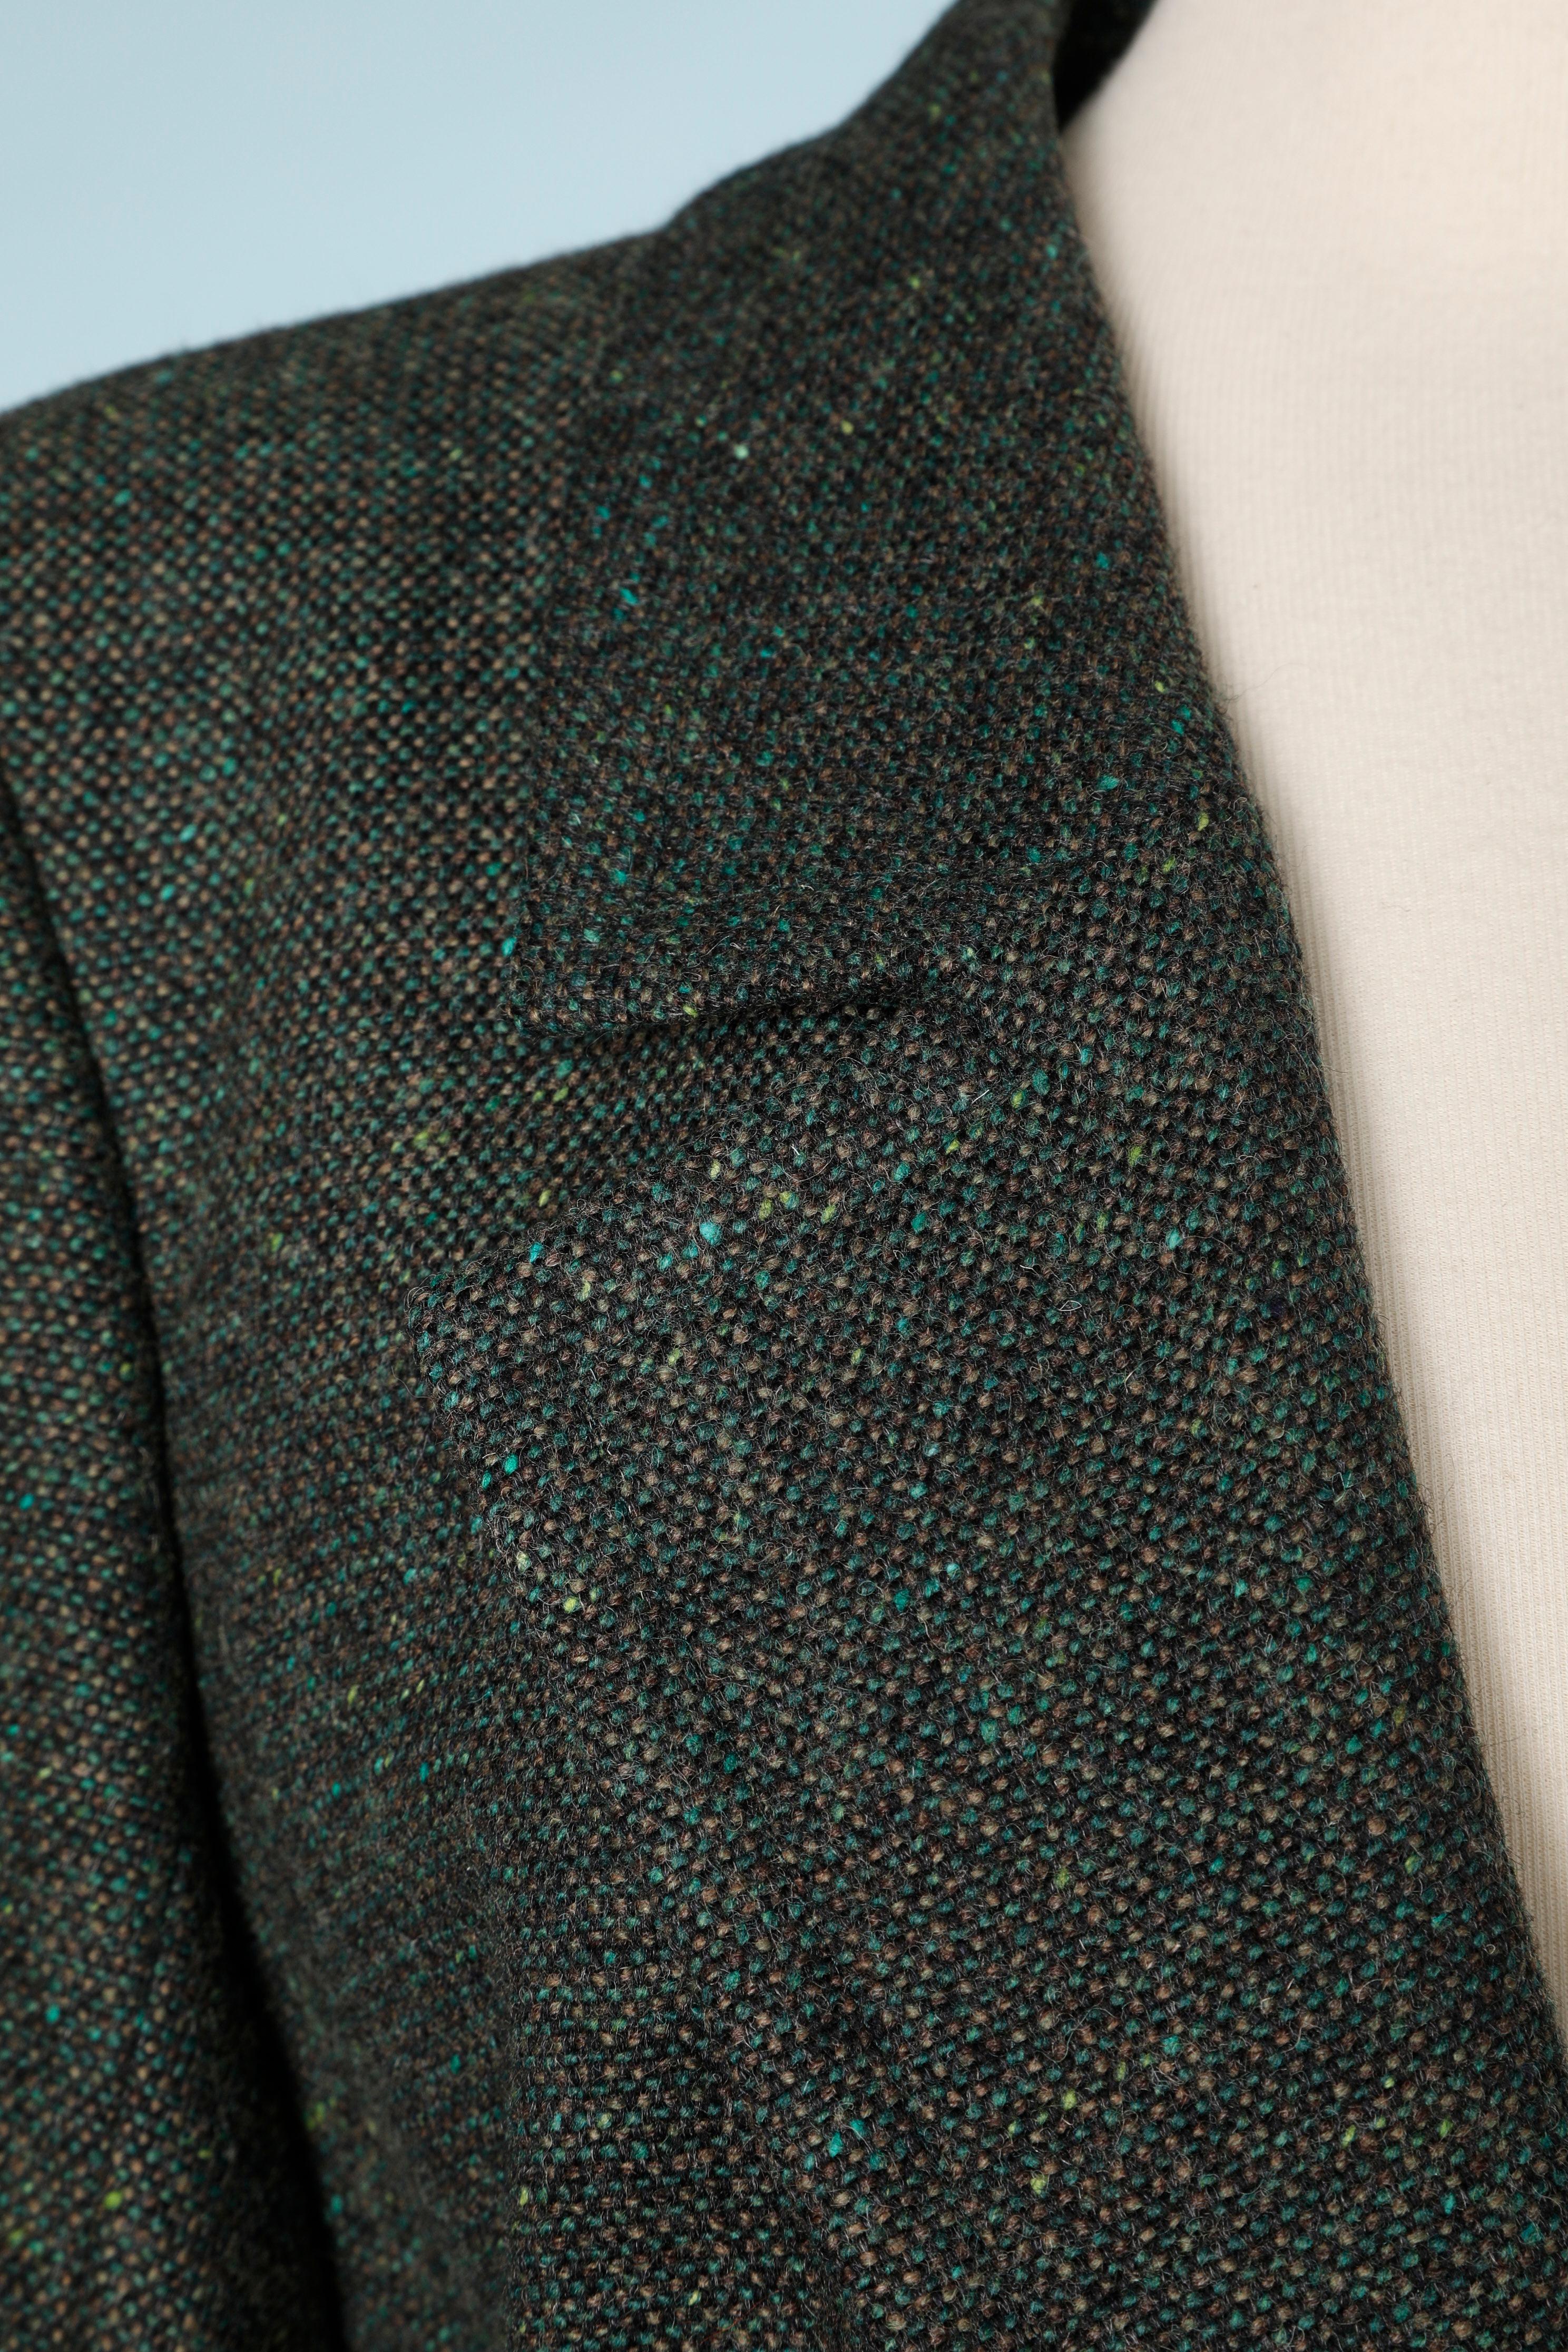 Jupe en tweed de laine verte. Boutons en métal. Des pads d'épaule. Doublure en satin.
TAILLE 40 (L) 